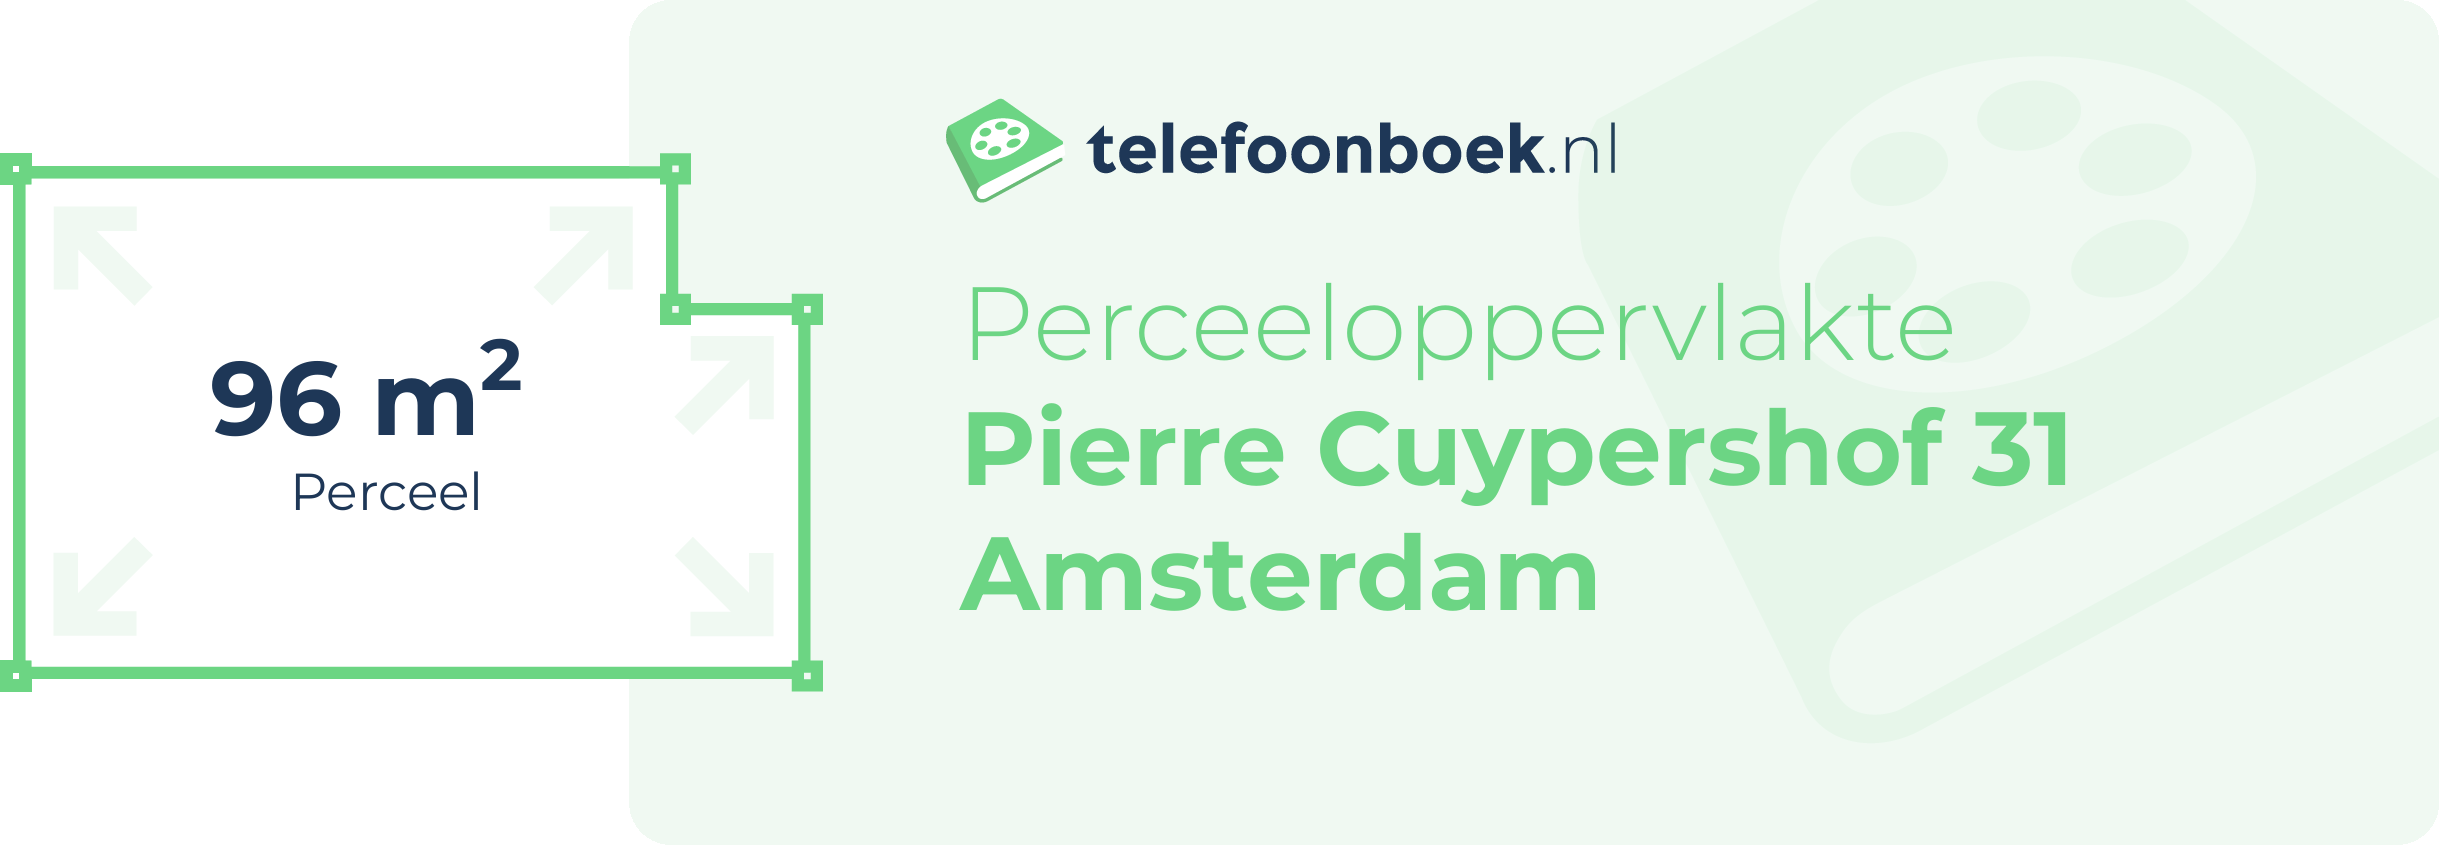 Perceeloppervlakte Pierre Cuypershof 31 Amsterdam